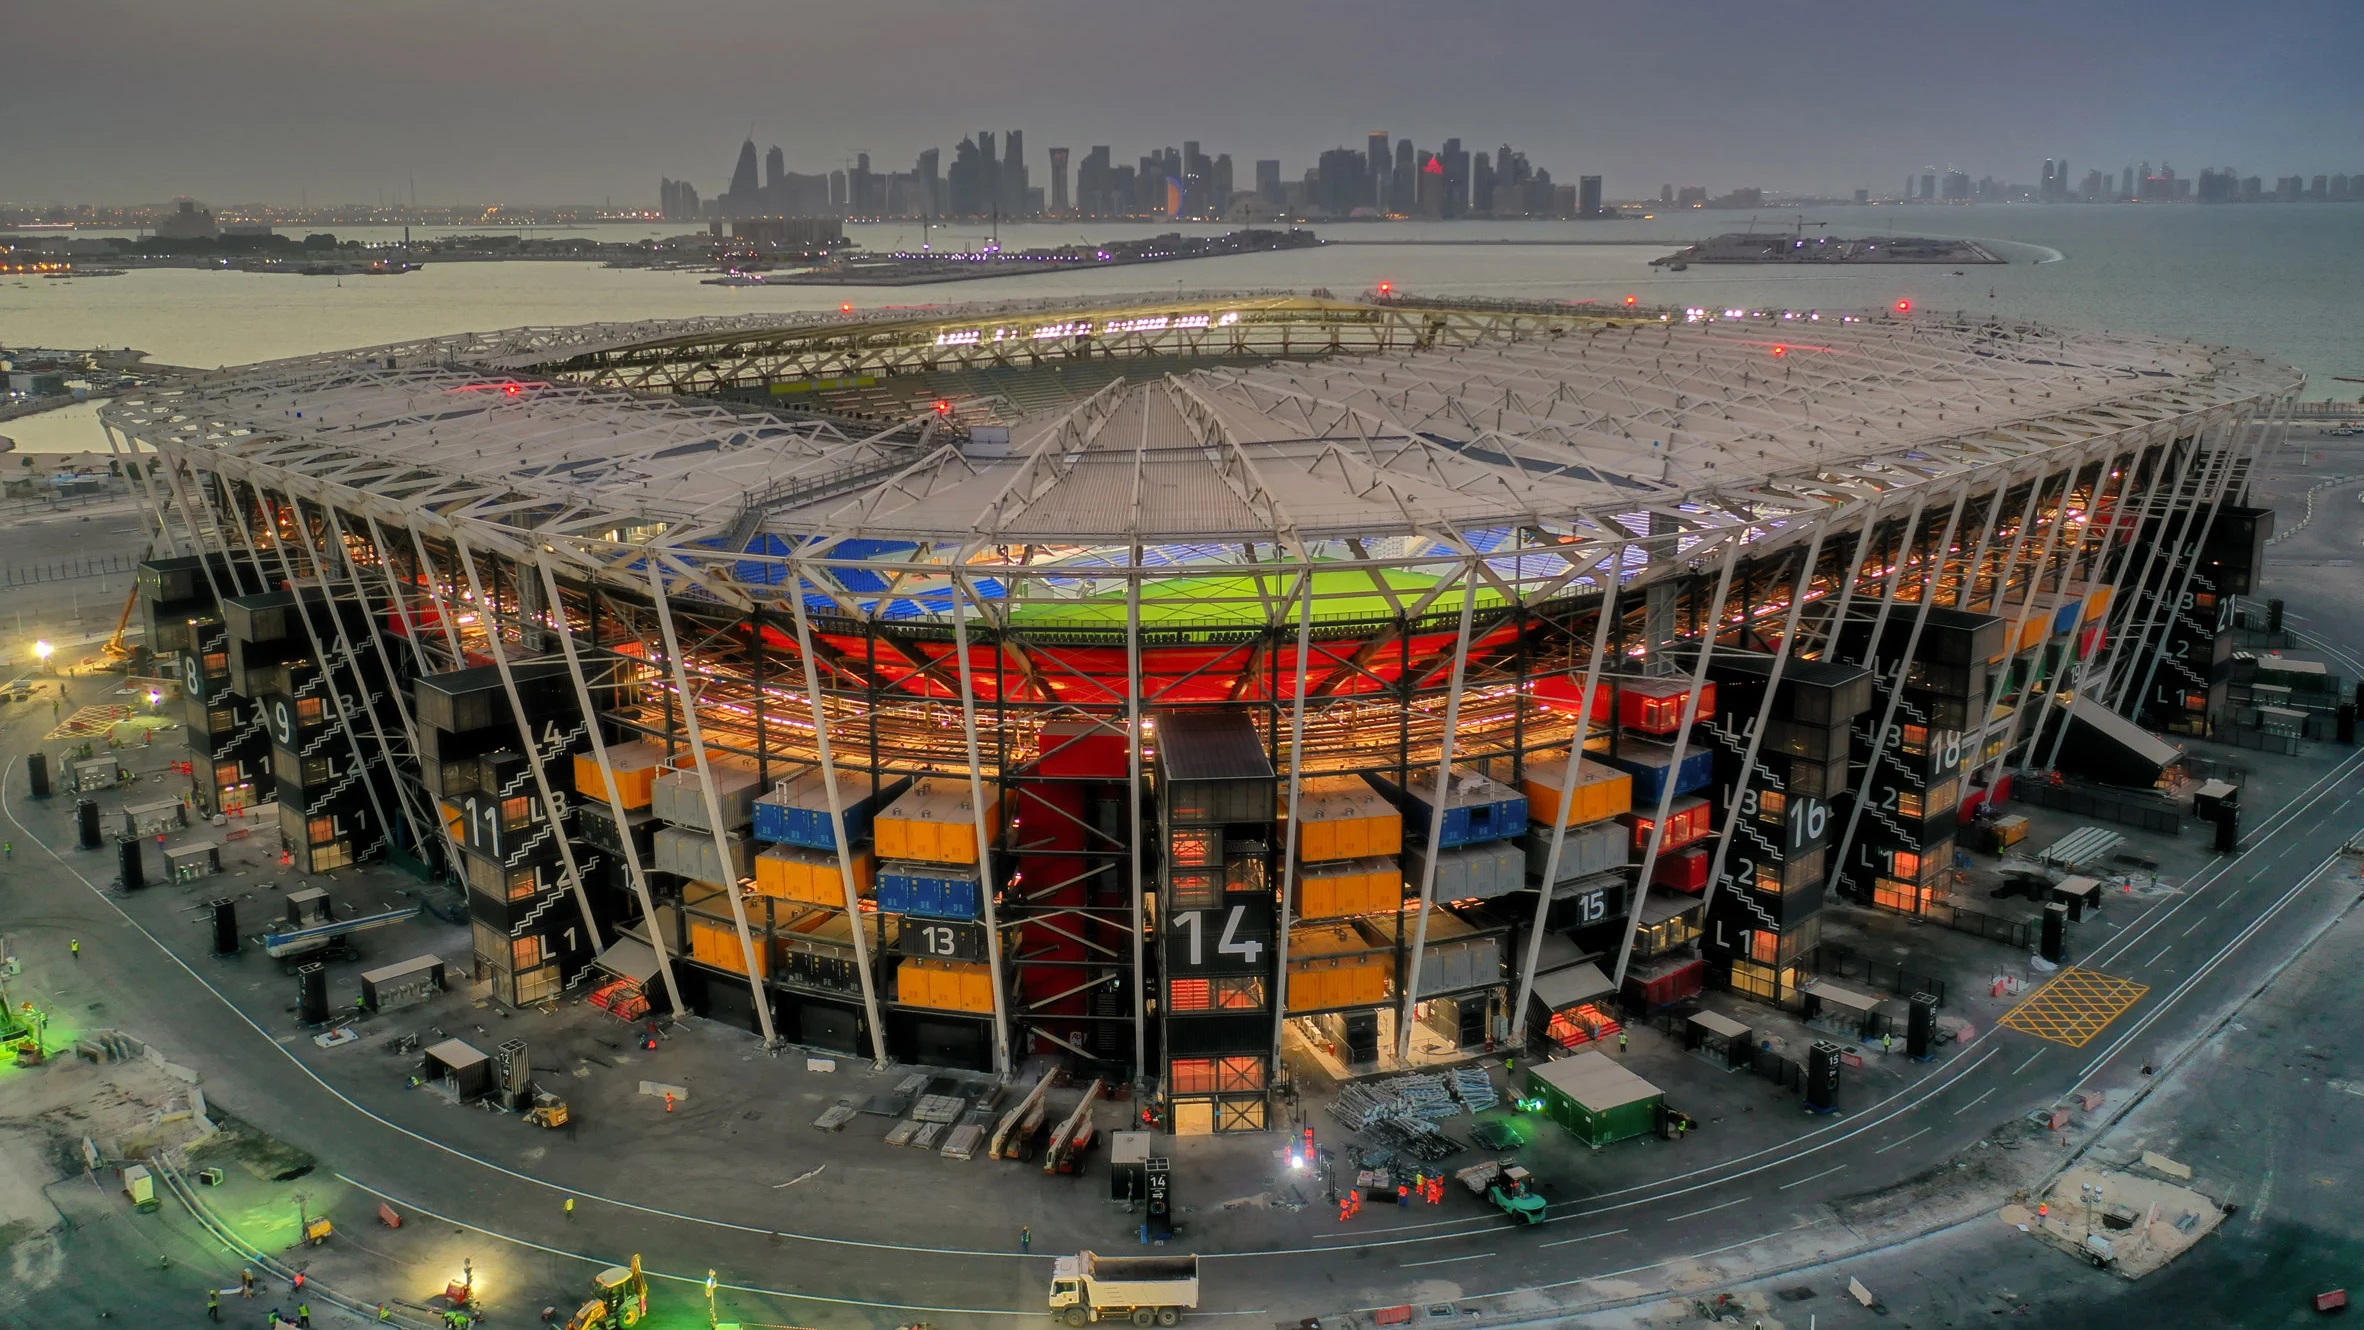 World Cup 2022 (WC 2022) - giải đấu bóng đá lớn nhất hành tinh diễn ra ở Qatar - là sự kiện lạ lùng nhất trong lịch sử bóng đá khi lần đầu tiên World Cup được tổ chức&nbsp;vào mùa đông và tại Tây Á.